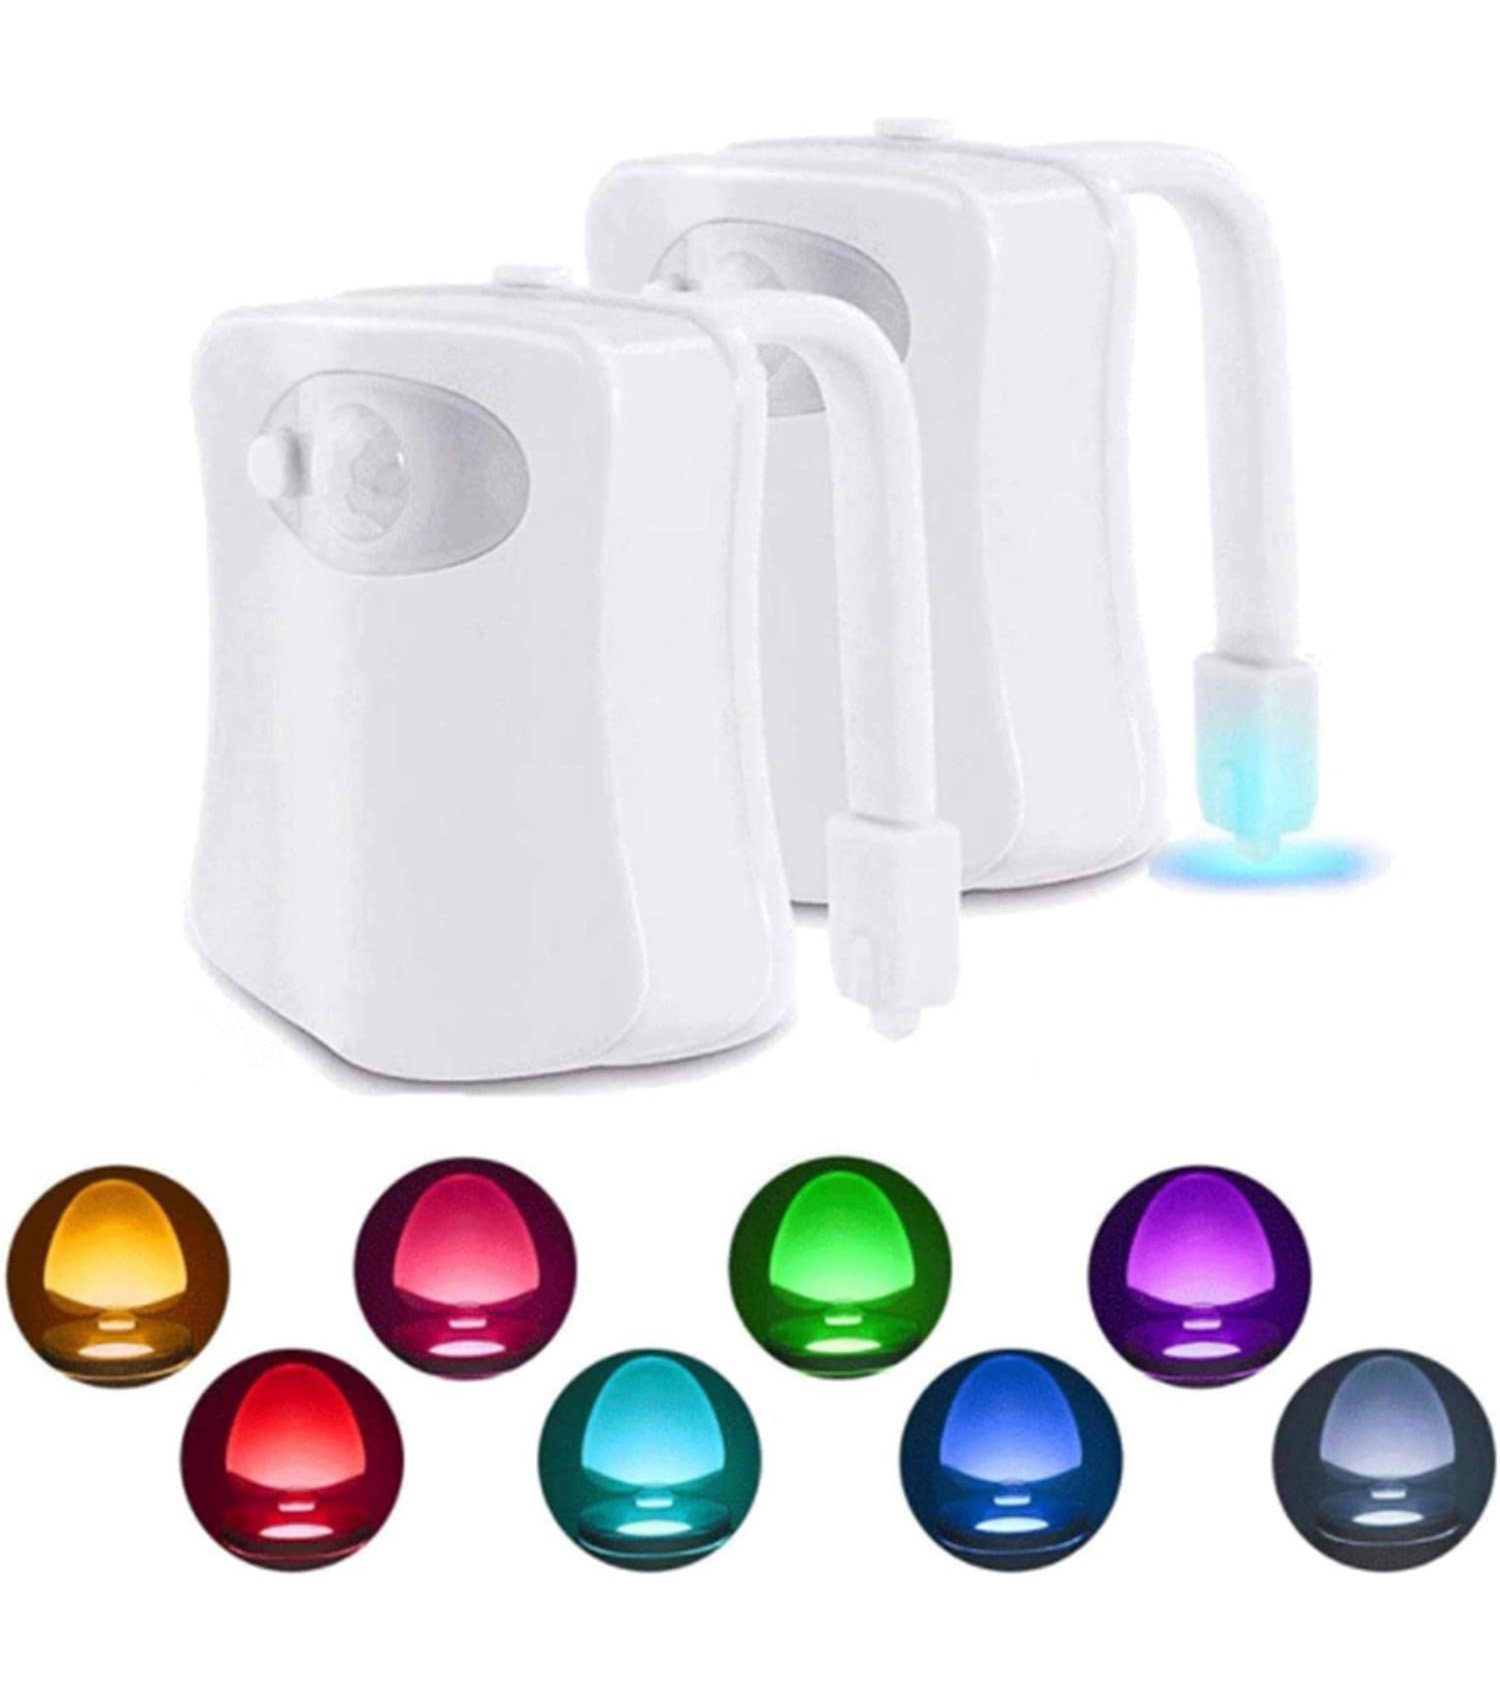 Ailiebe Design LED Nachtlicht WC-Nachtlicht Toilettensitzlampe 16 Farben Bewegungssensor, LED fest integriert, für WC Toiletten Badezimmer Toilettennachtlicht 2er Set